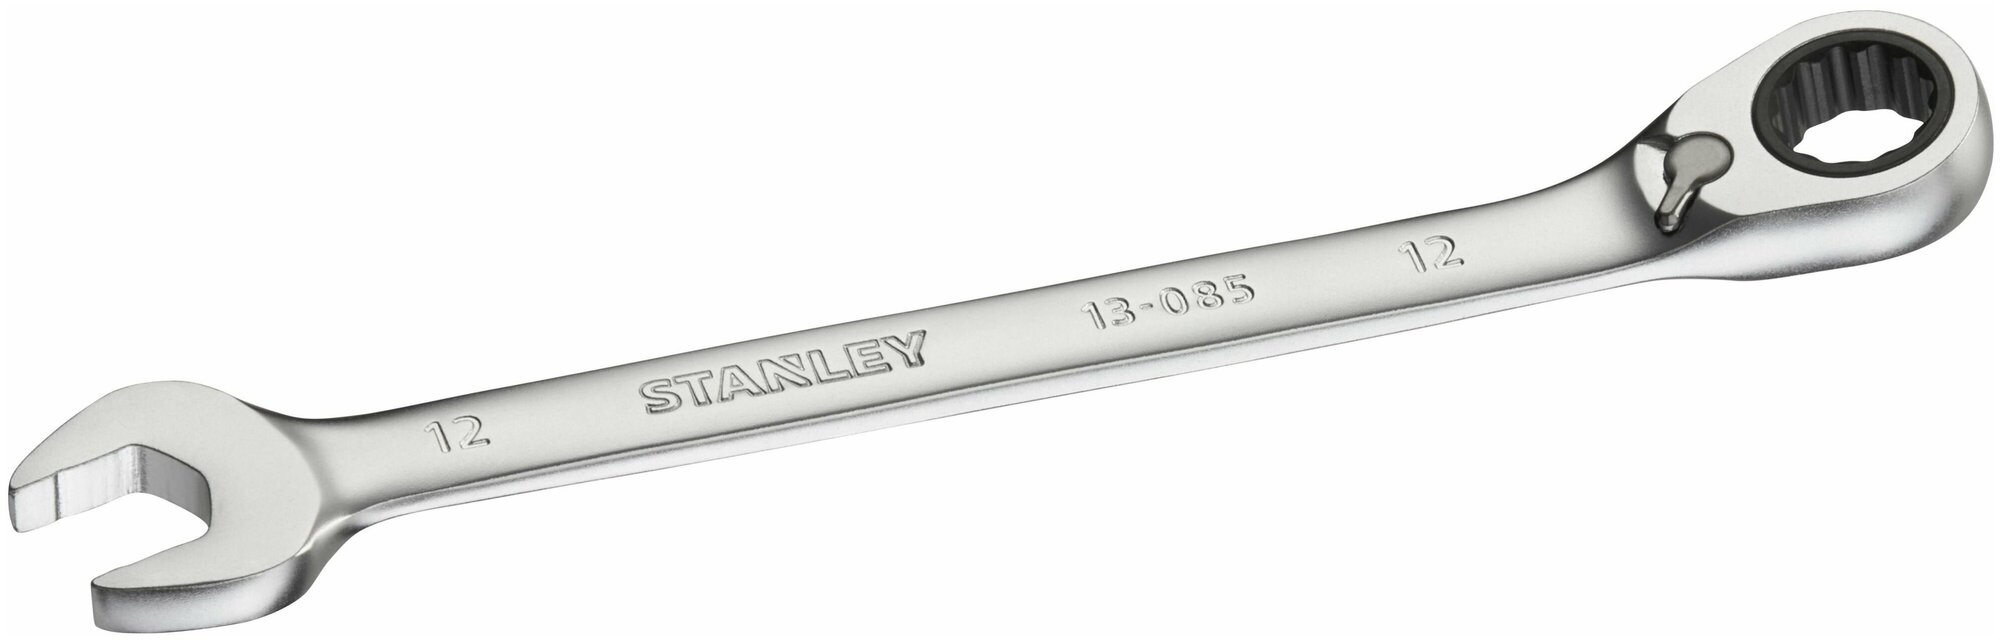 Гаечный ключ с трещоткой Stanley Fatmax, 12 мм - фото №1